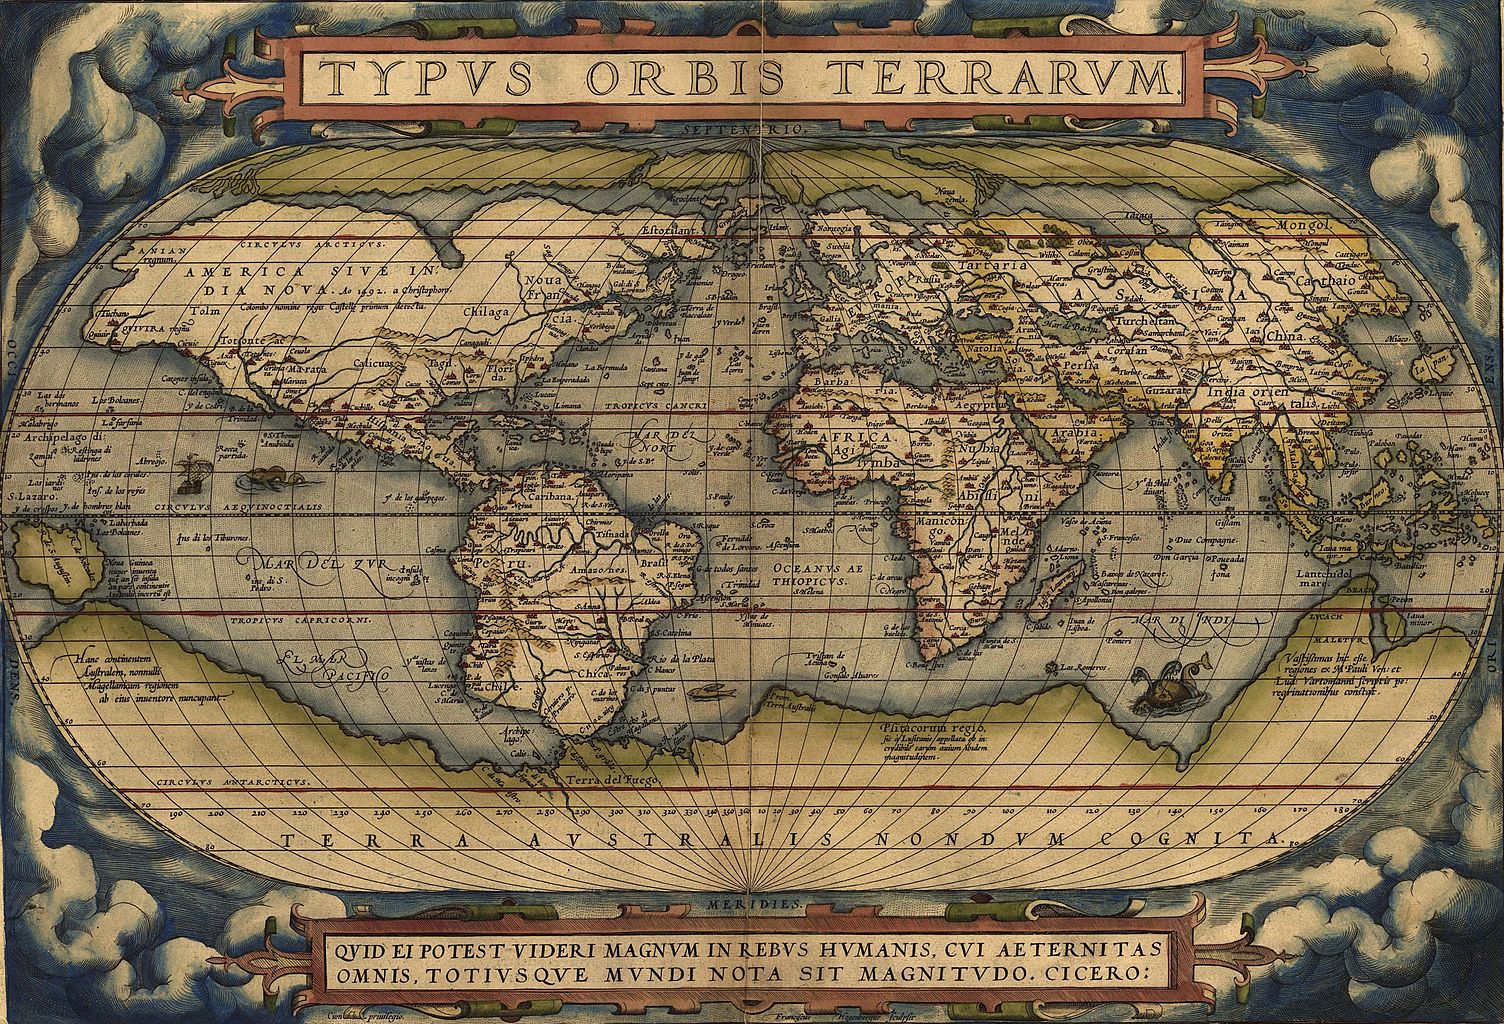 The 1564 Typus Orbis Terrarum map.